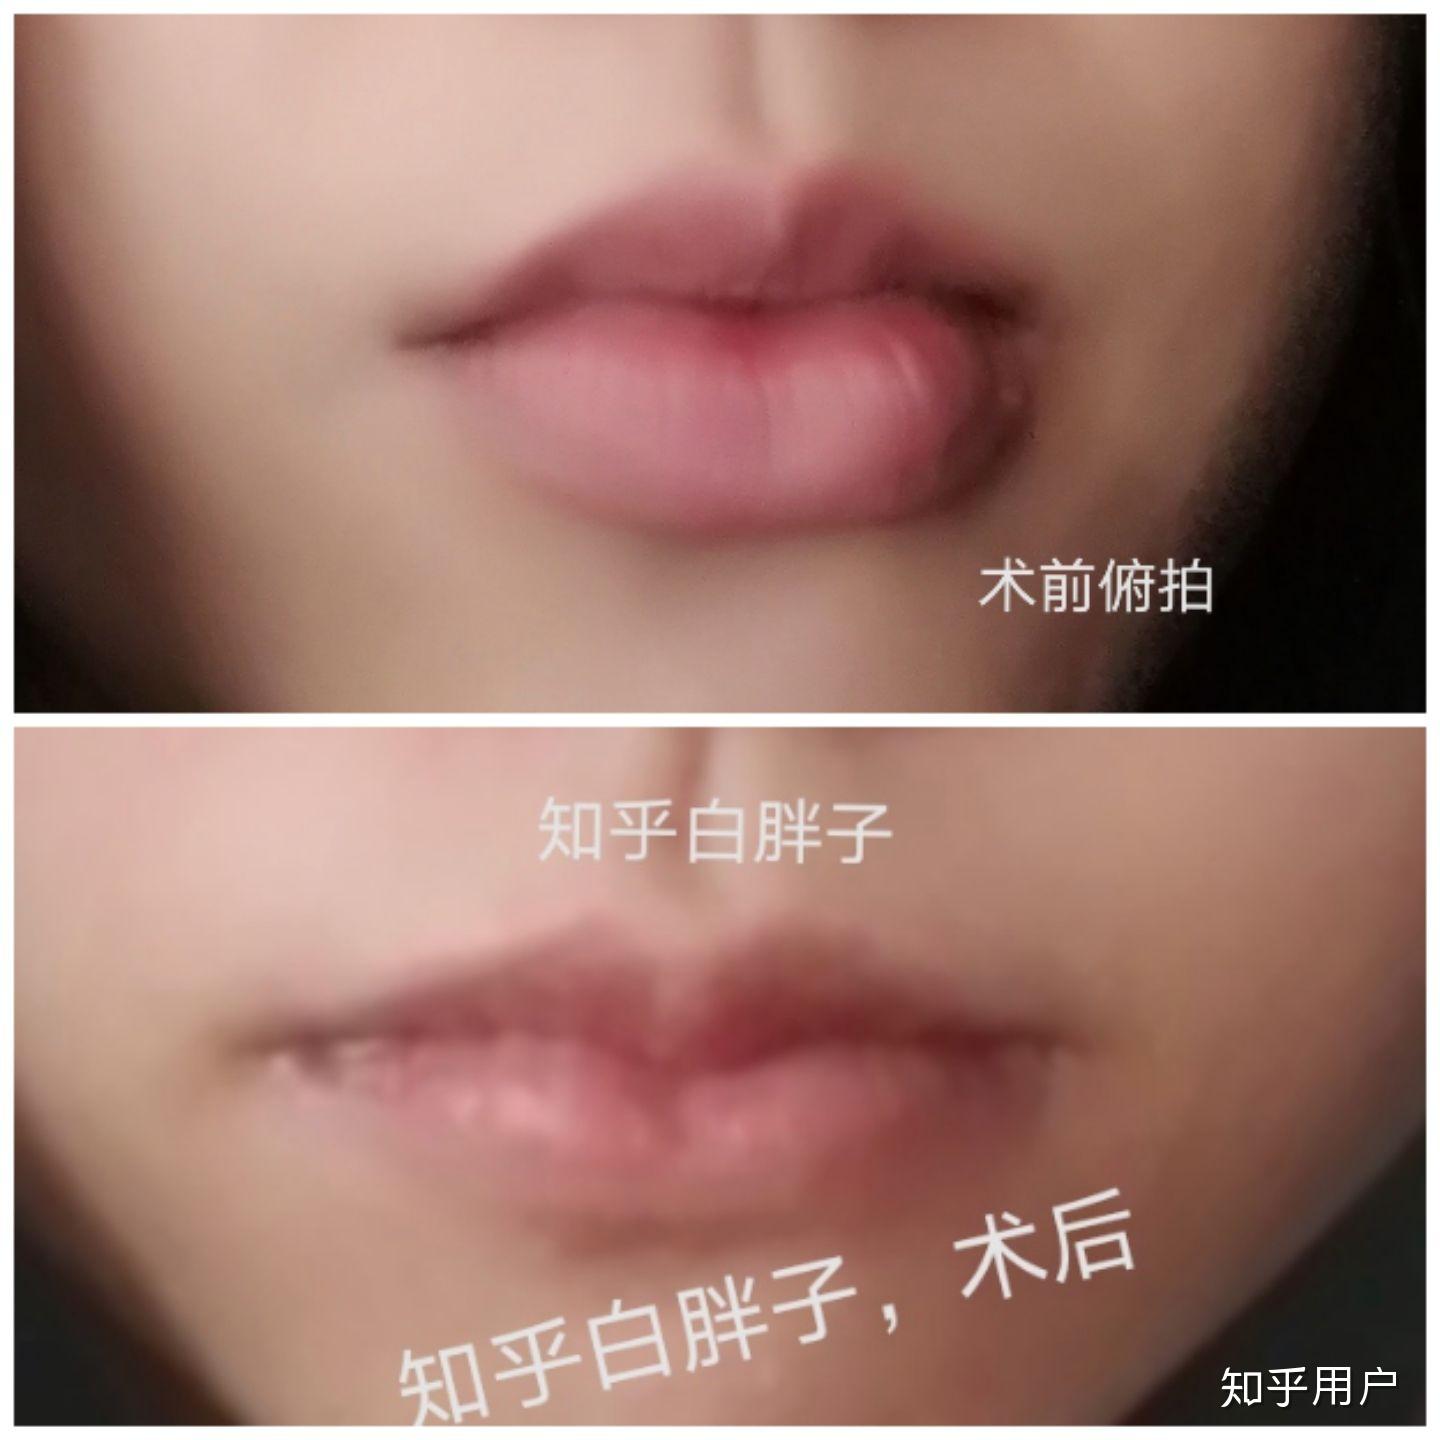 上海张玲医生唇部整形术改善唇形 - 知乎